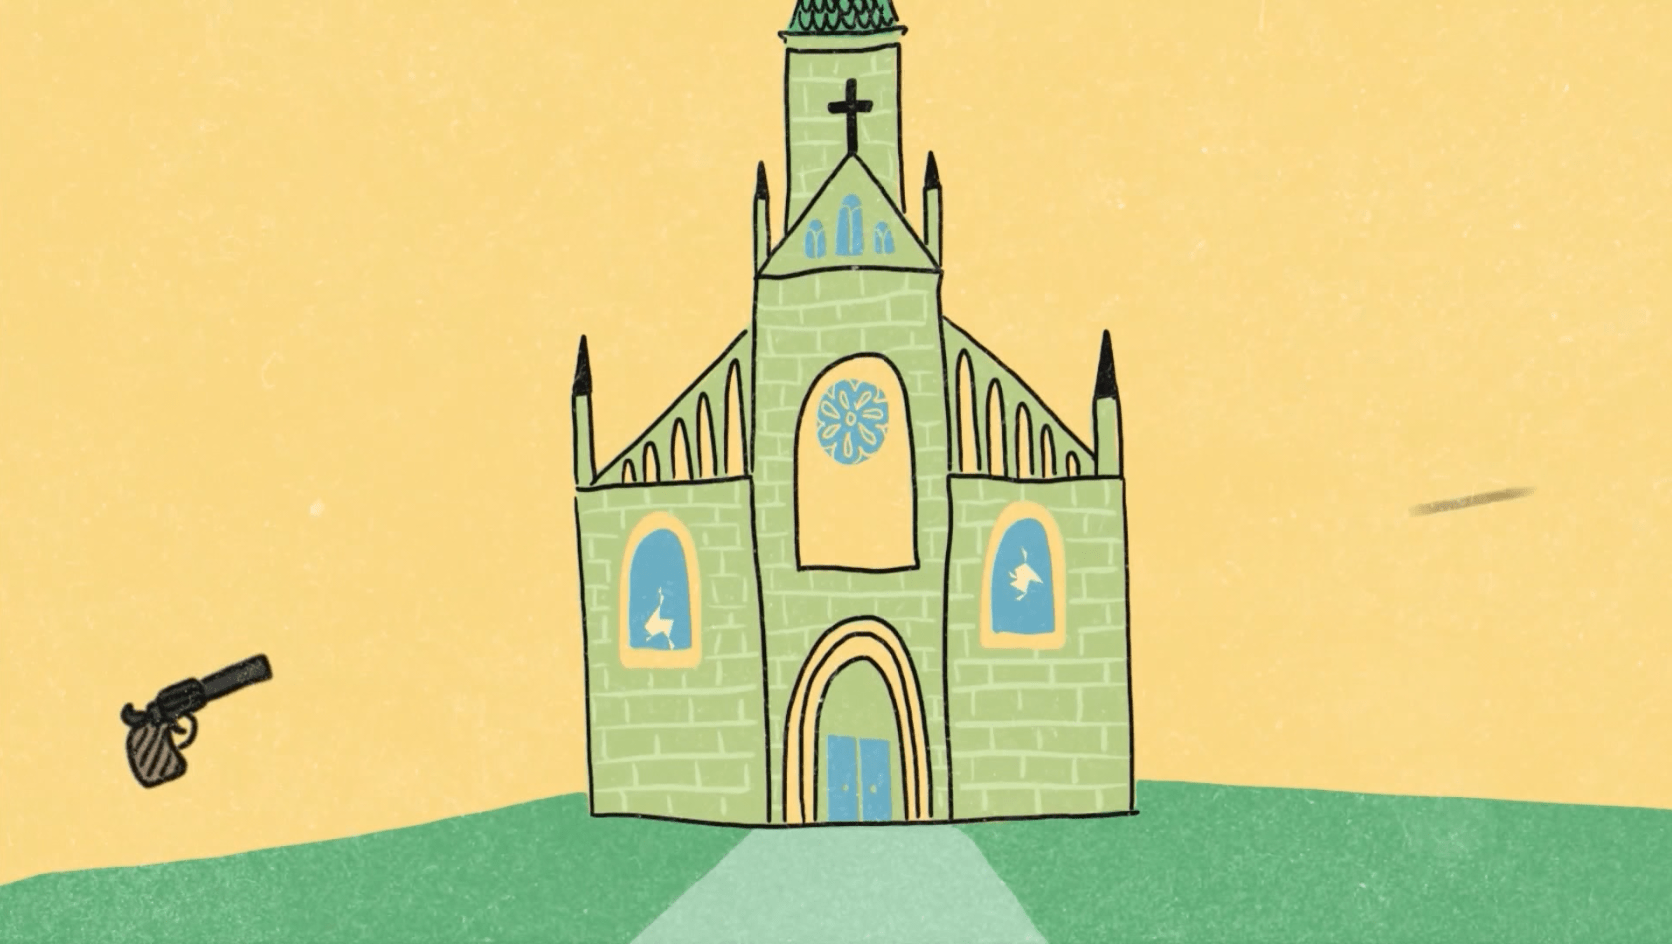 Que veut dire « De kogel is door de kerk »? Réponse dans les dessins animés « Pardon? »